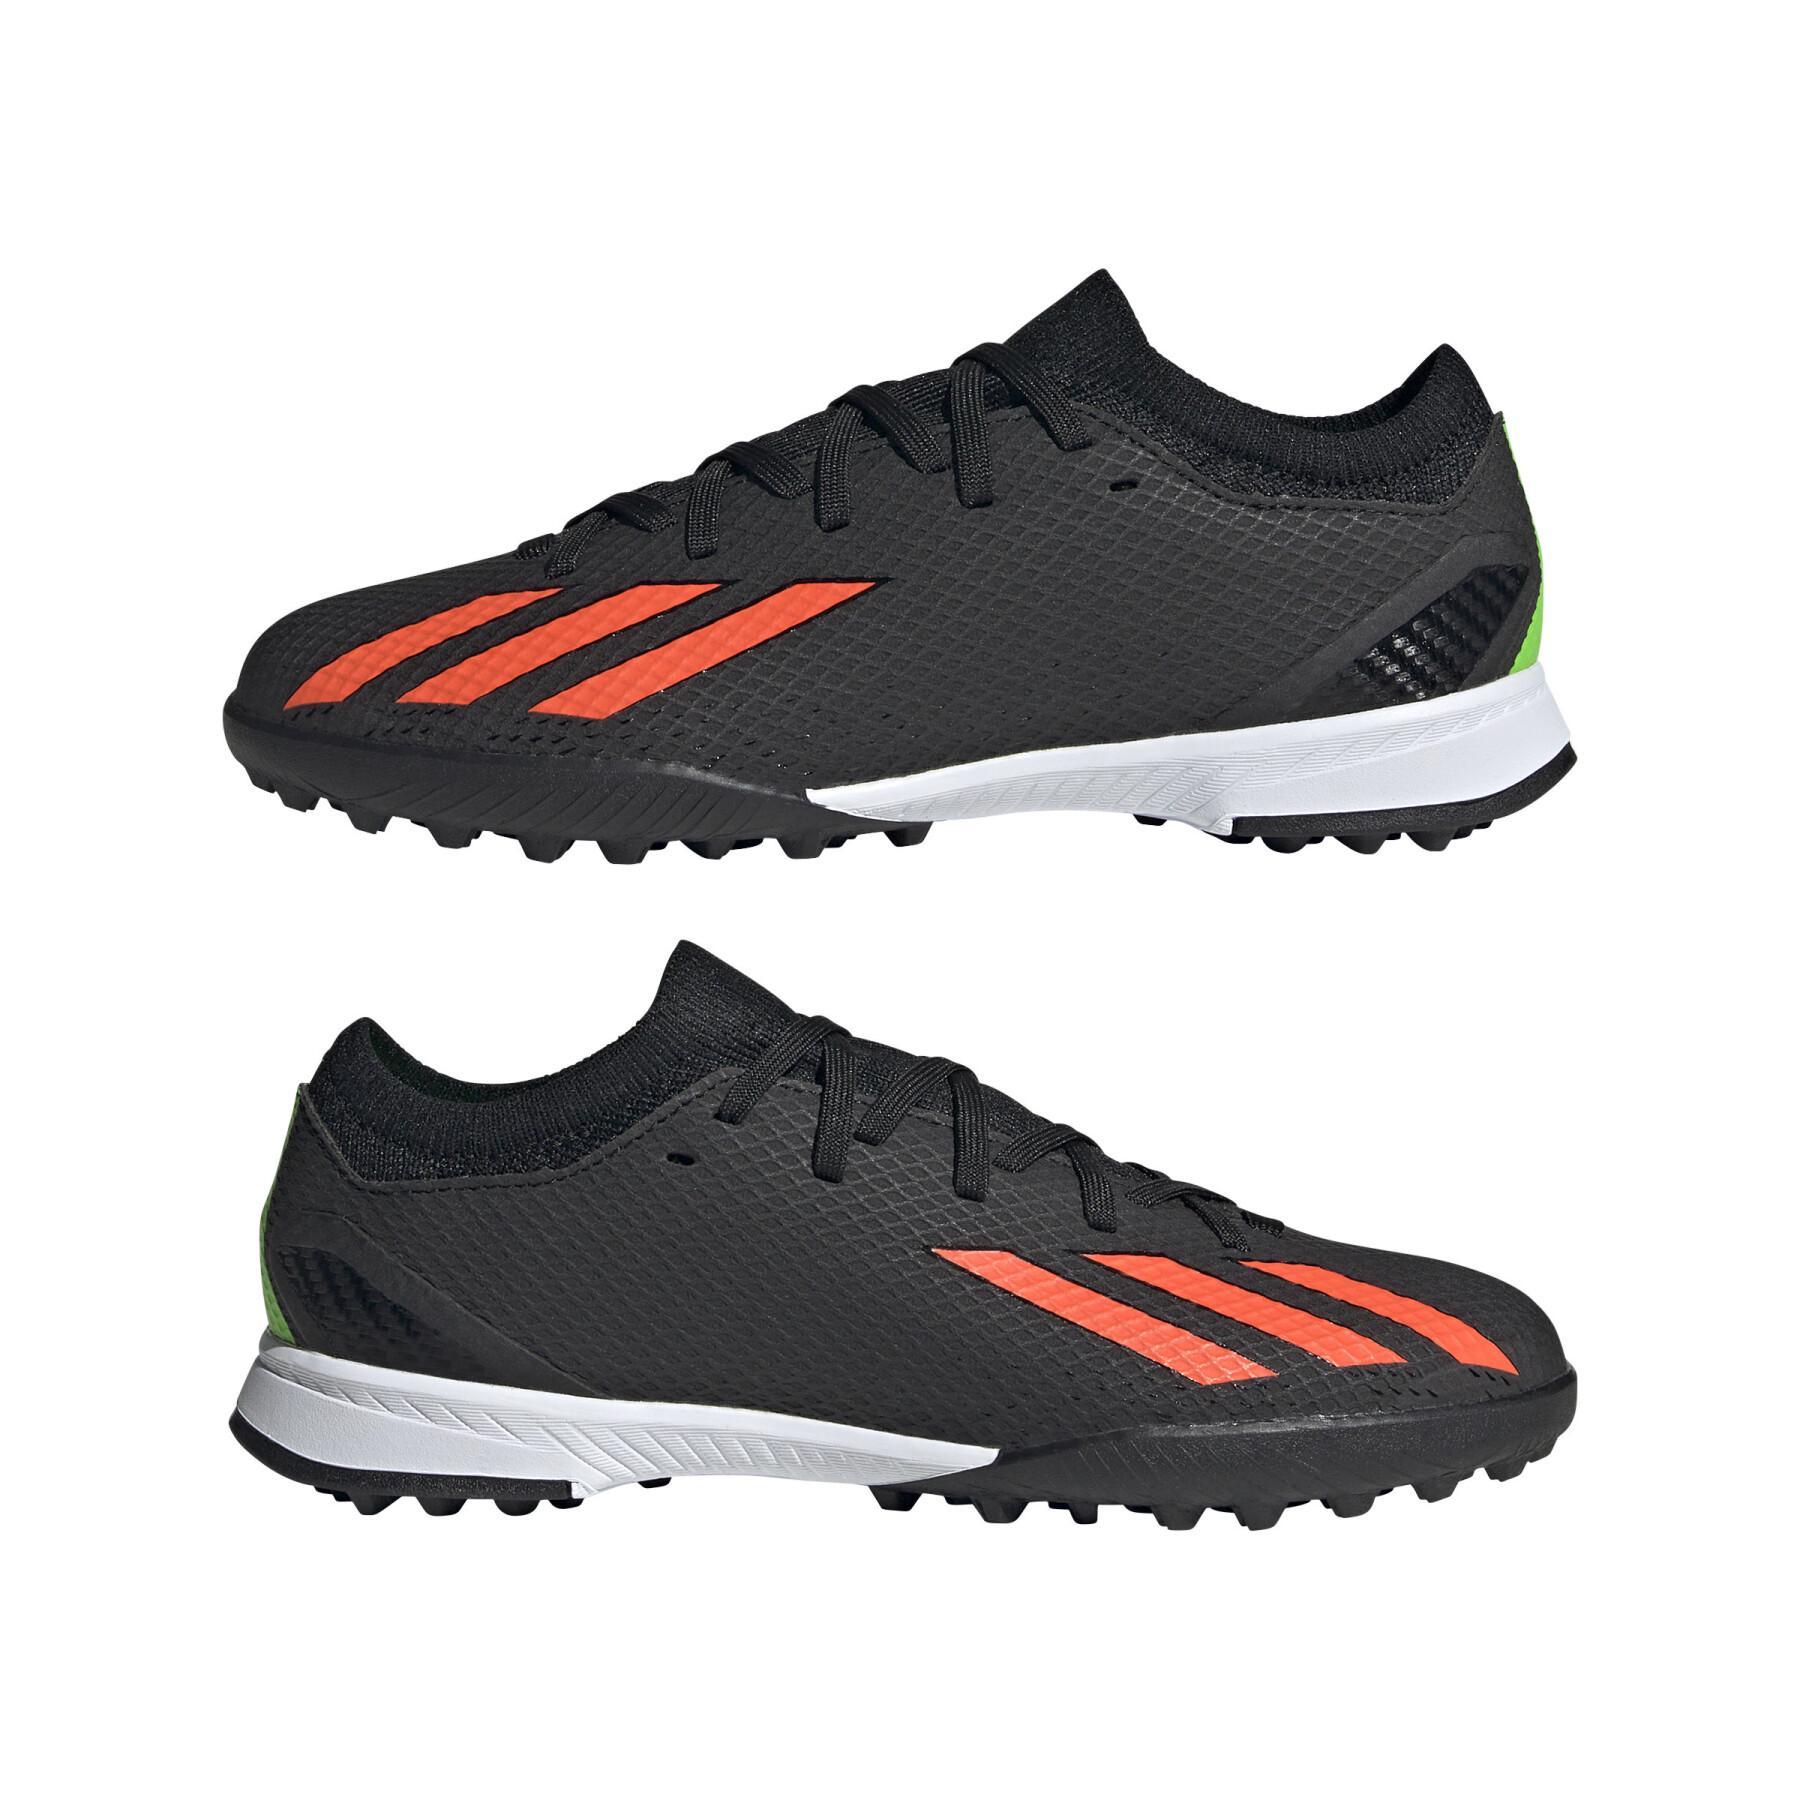 Scarpe da calcio per bambini adidas X Speedportal.3 Turf - Shadowportal